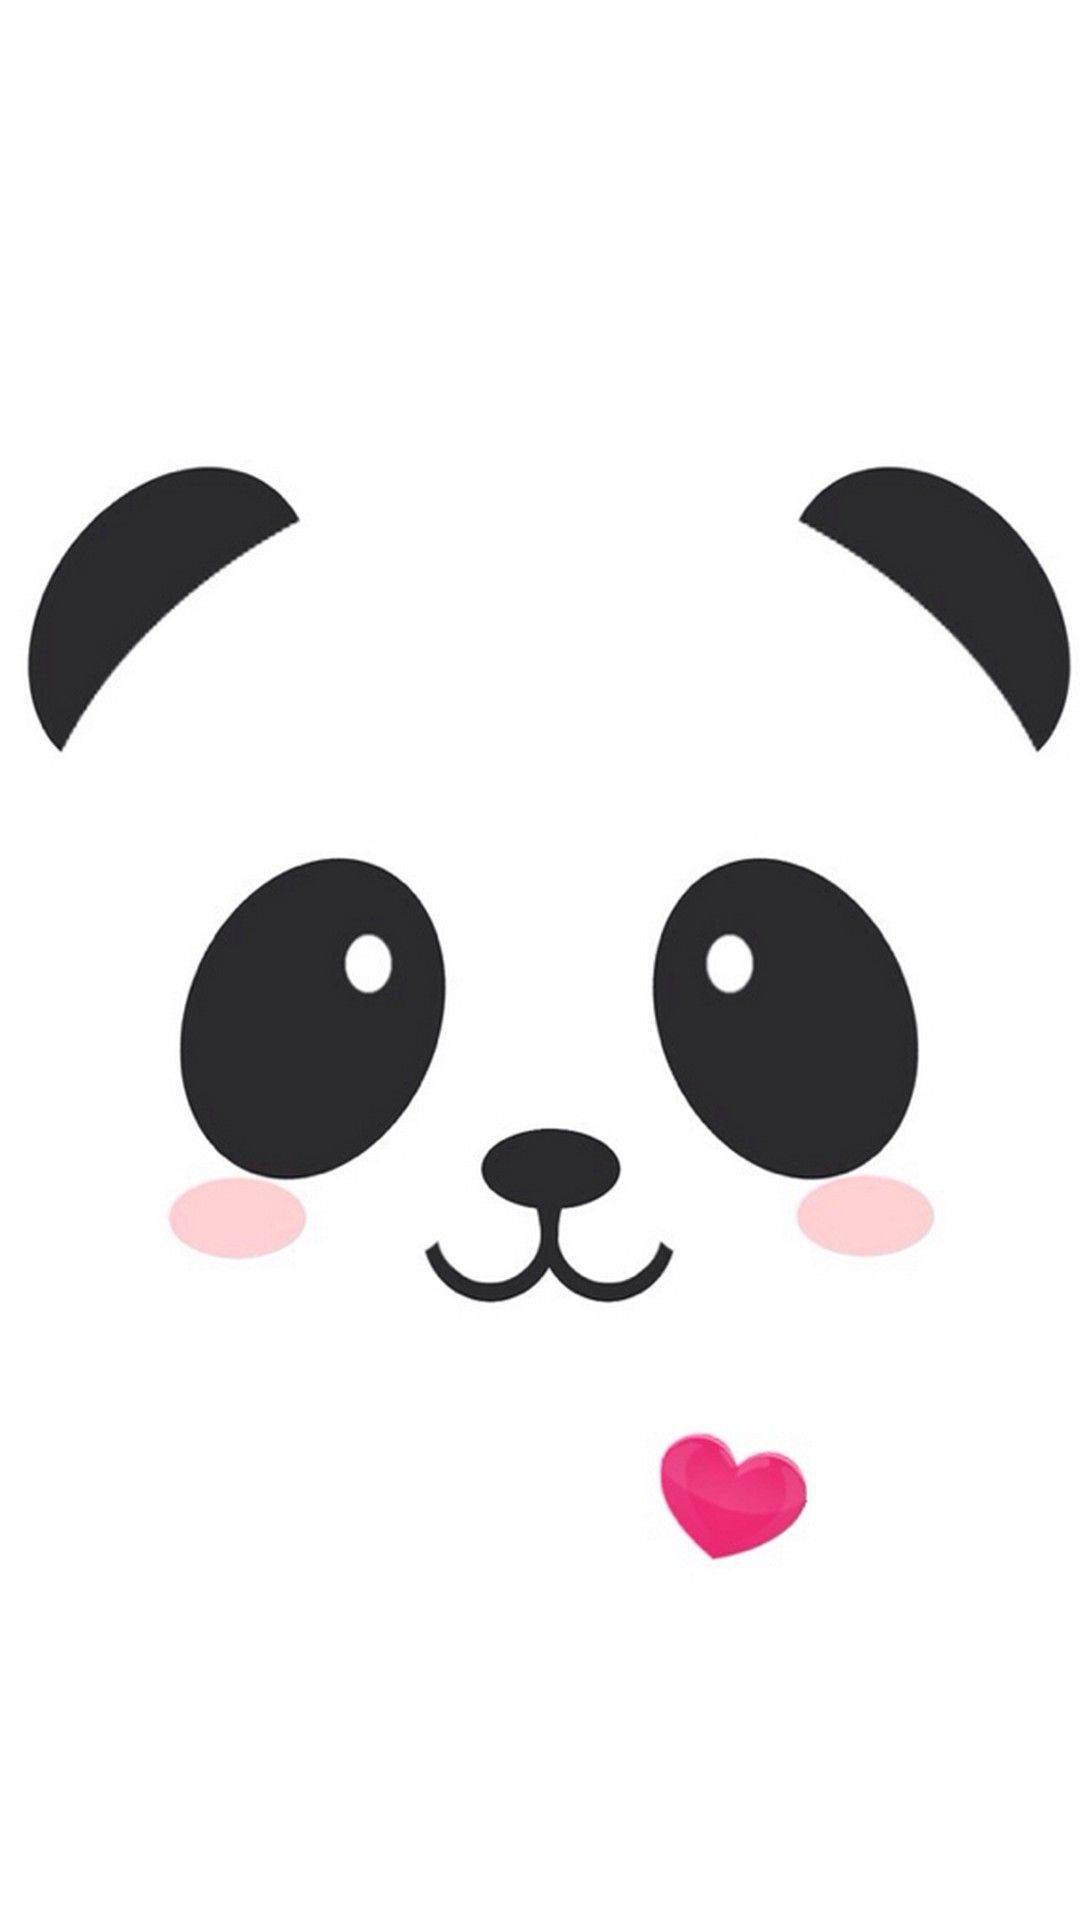 Cute Panda iPhone Wallpaper On